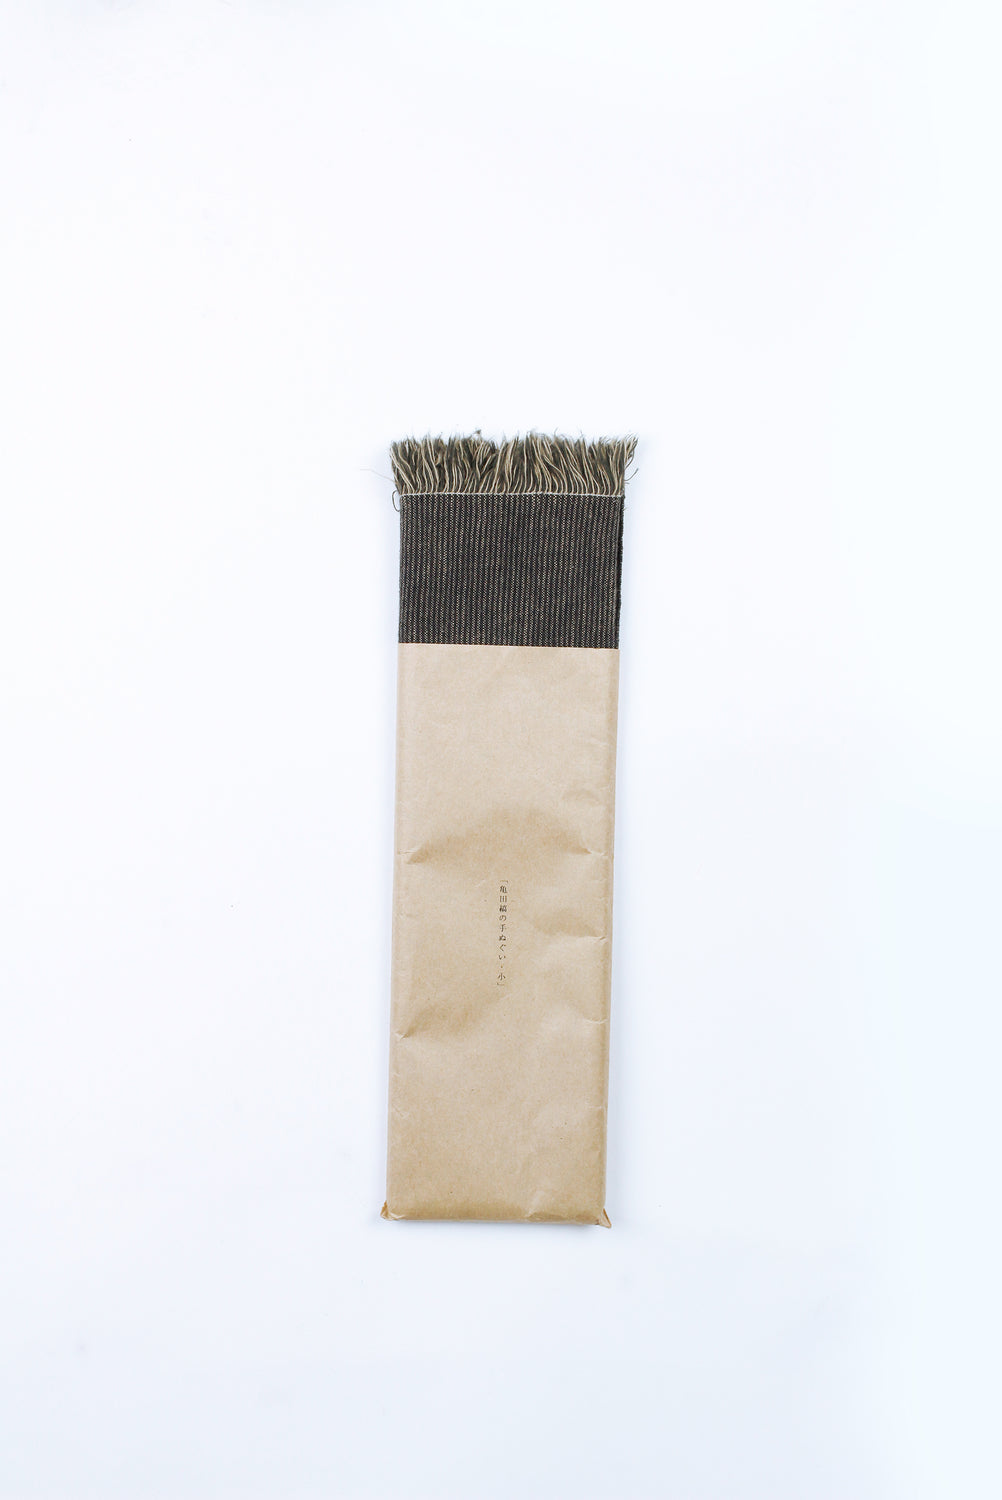 Cotton Tenugui with Fringe, Dark Stripe